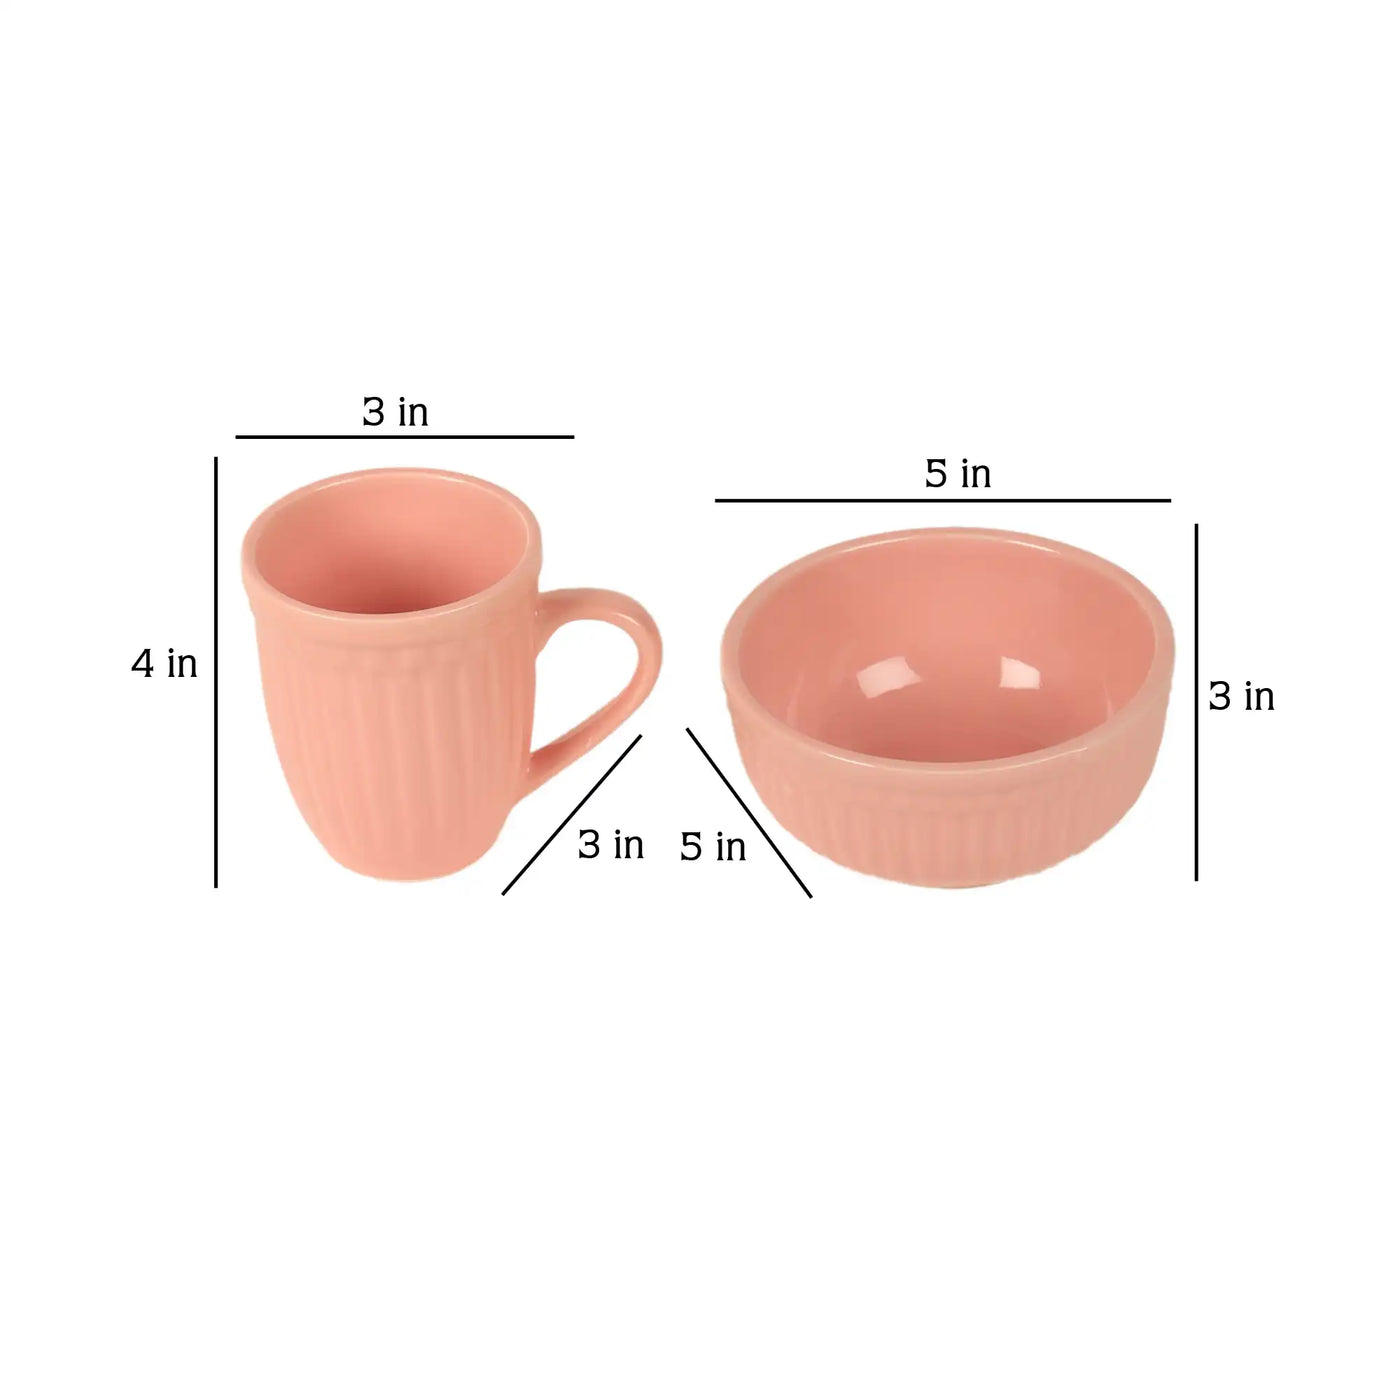 Pink Ceramic Mug with Bowl Set of 6